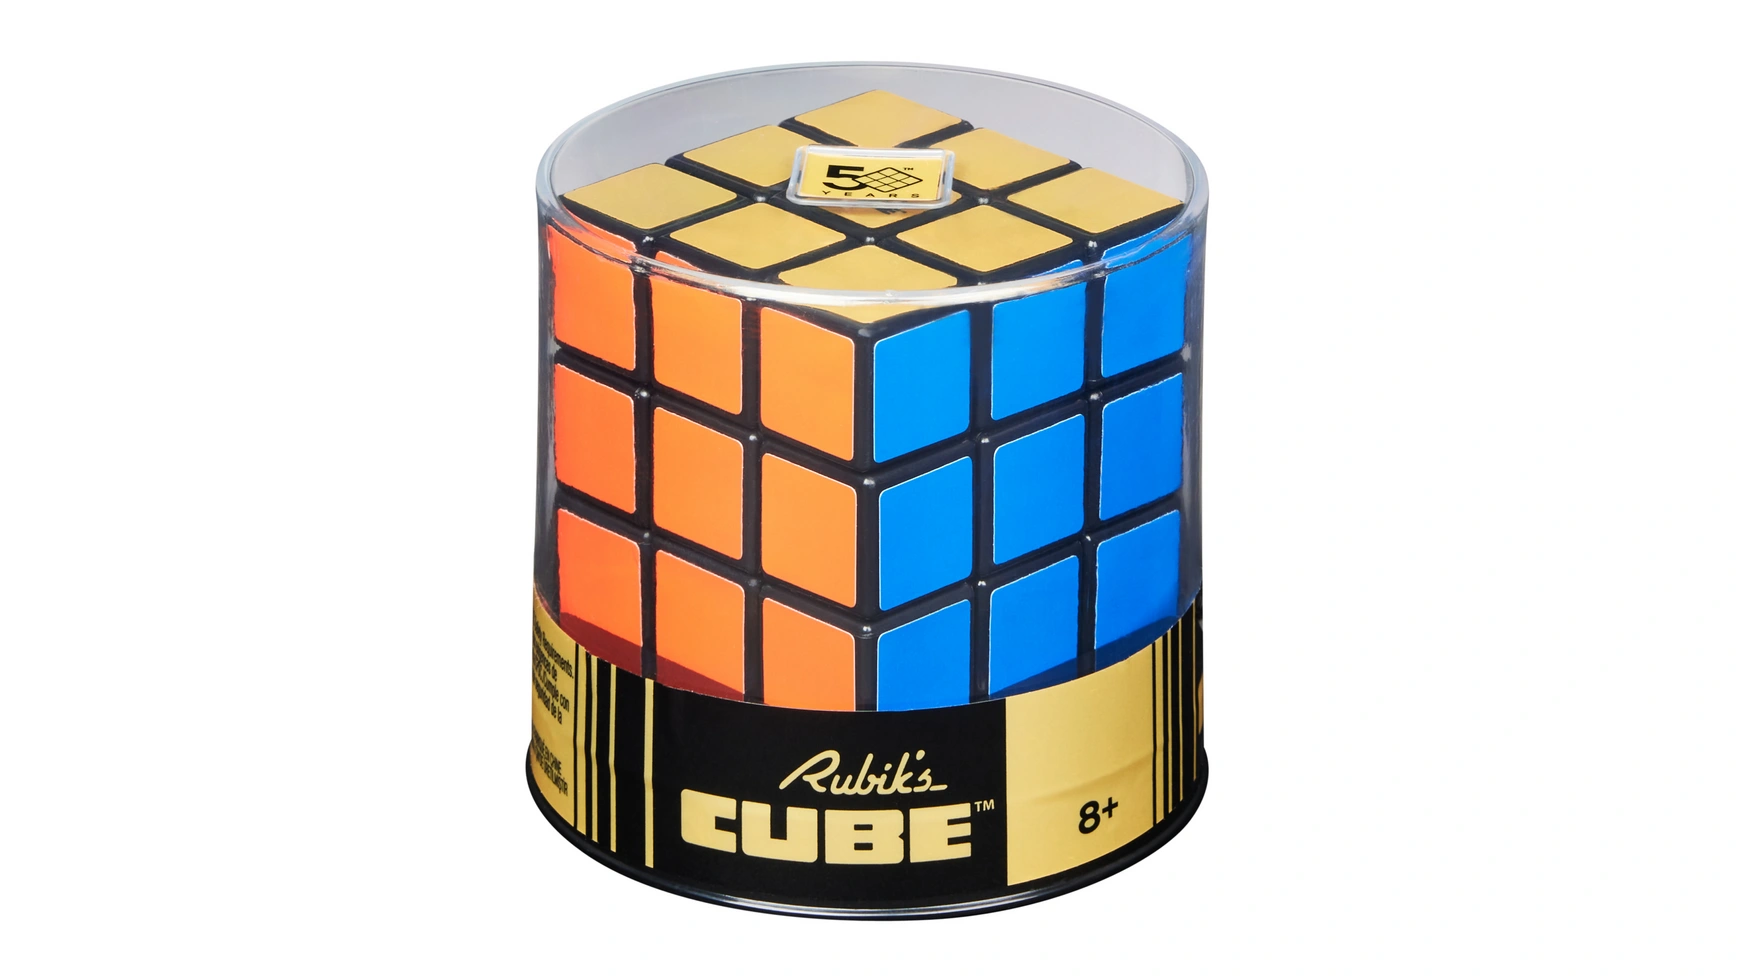 Ретро-кубик Рубика 3x3 Кубик Рубика кубик 3x3, внешний вид которого напоминает оригинал 50-летней давности Spin Master